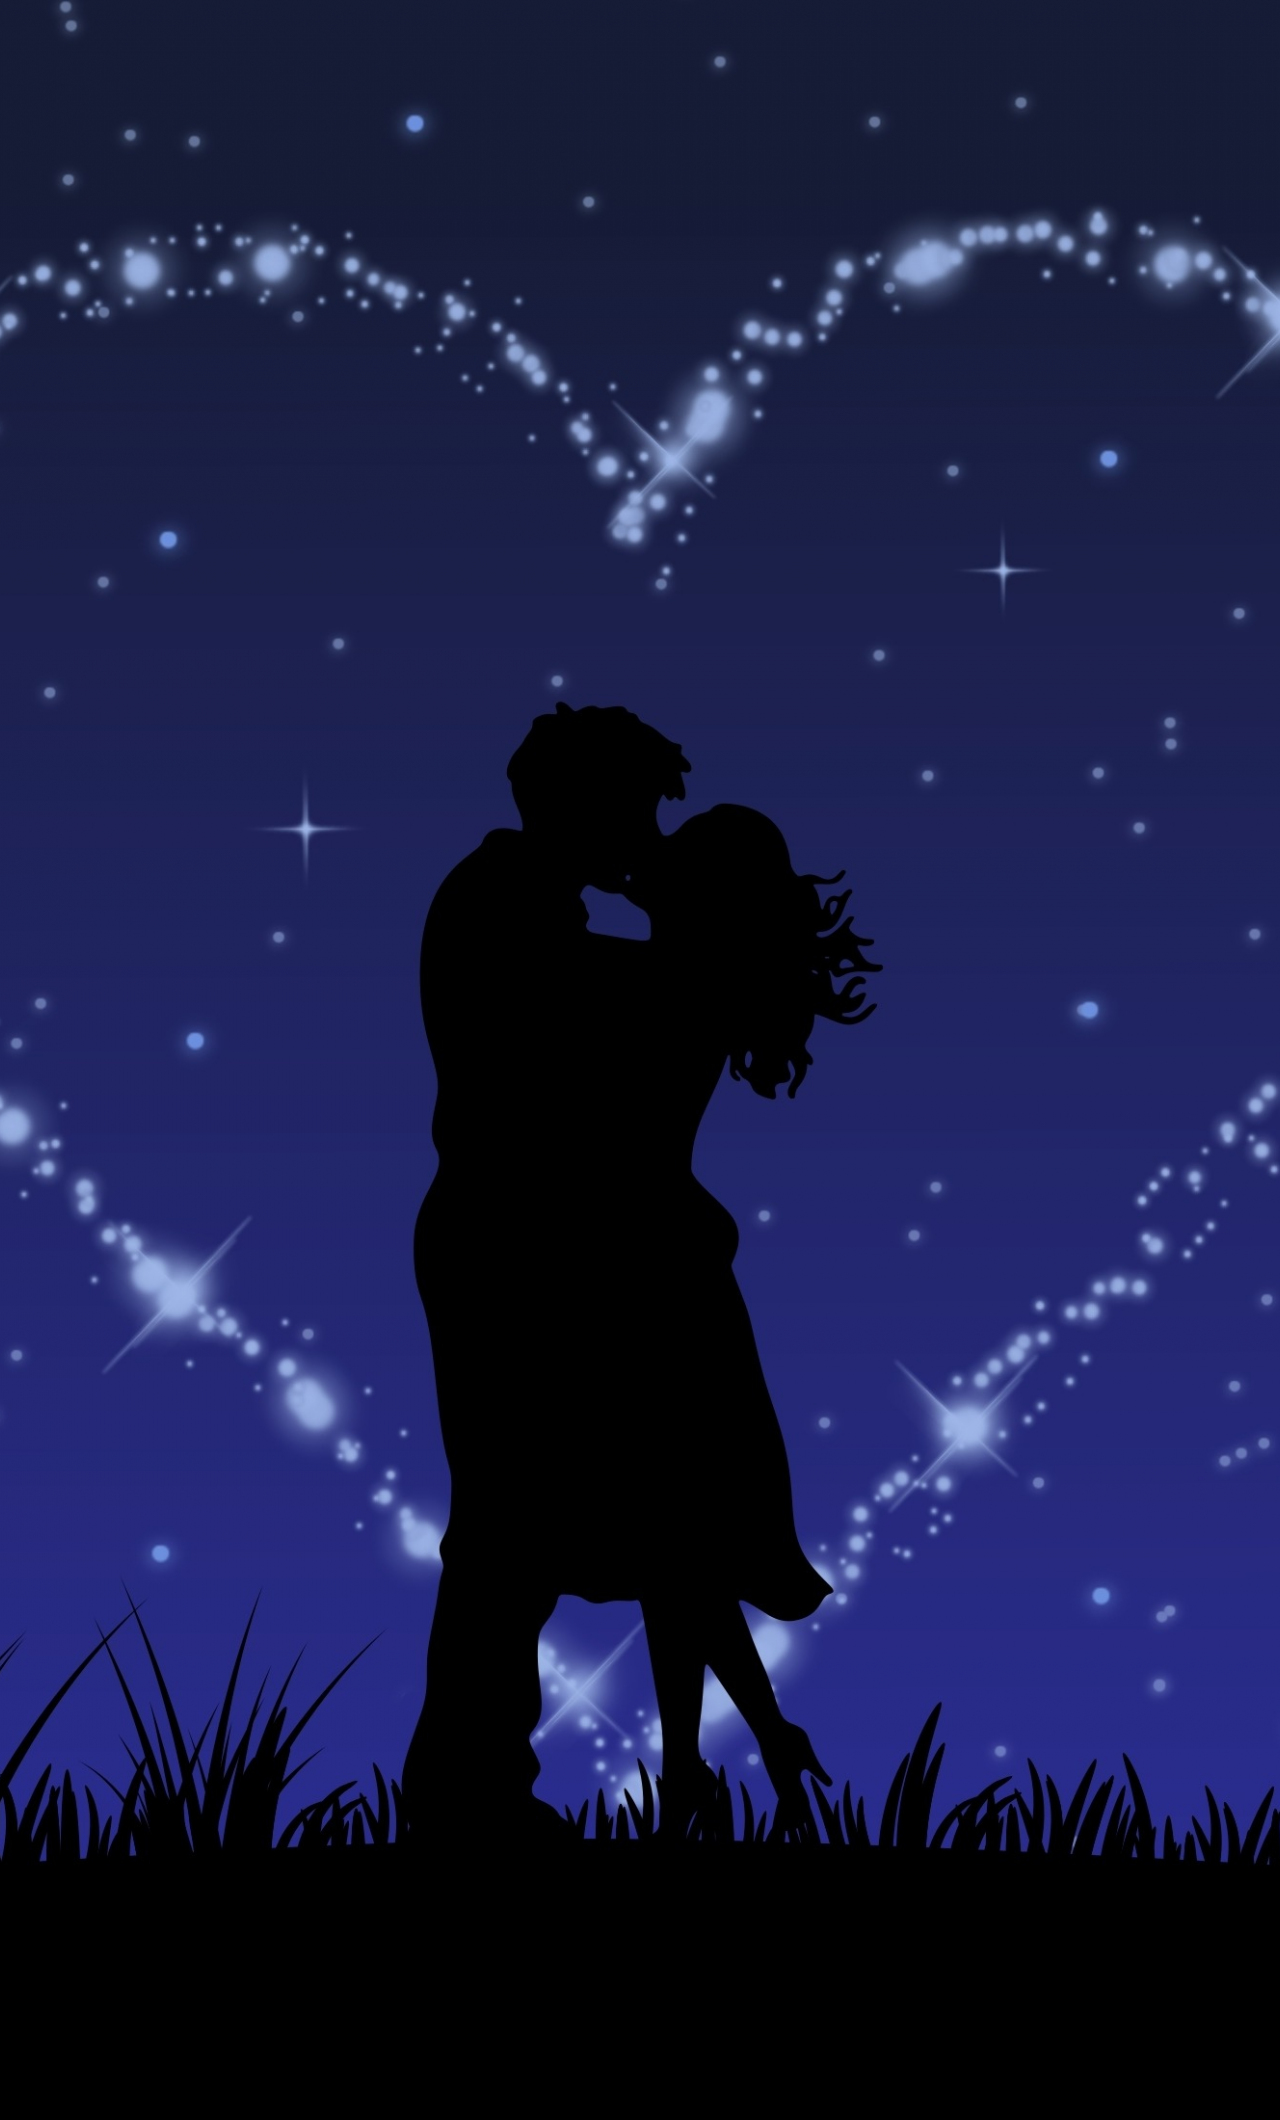 Download wallpaper x couple love kiss stars glitter digital art iphone plus x hd background